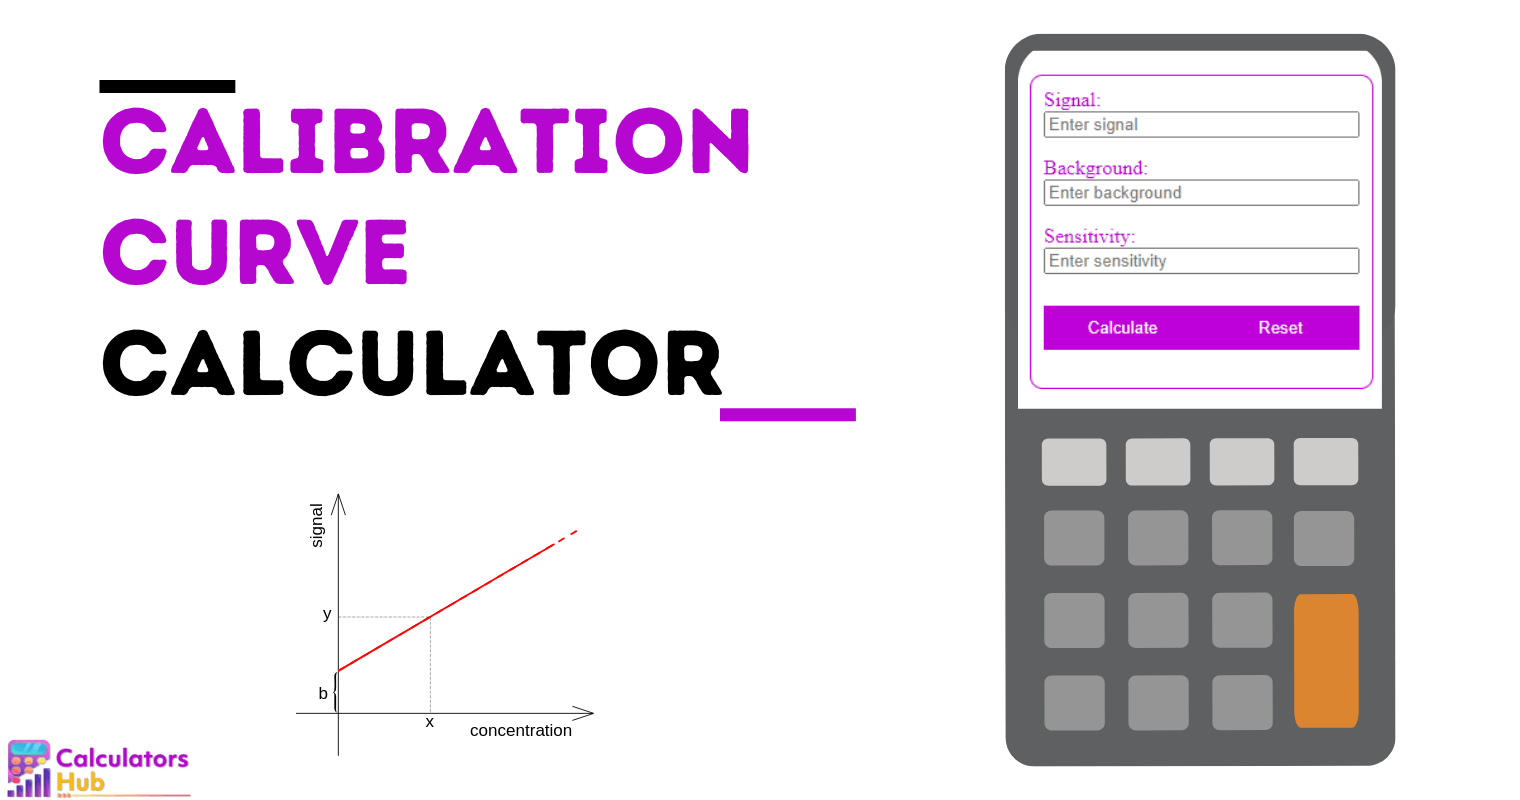 Calibration Curve Calculator